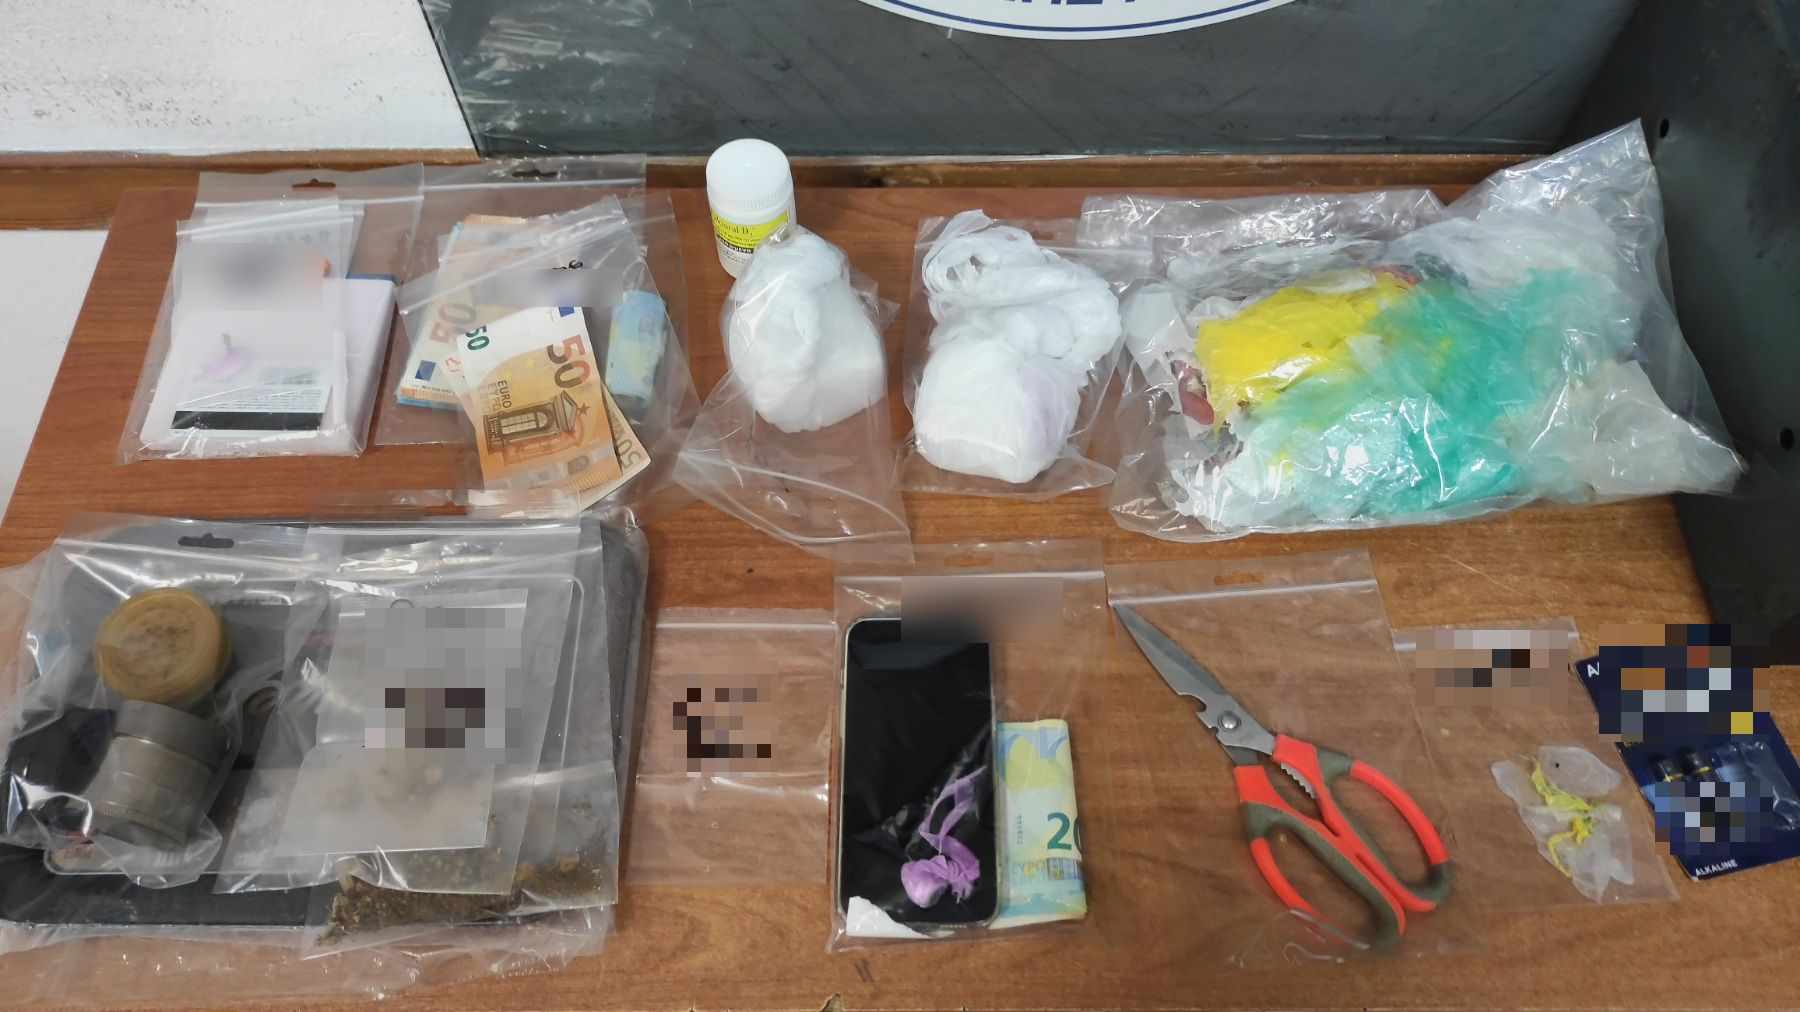 Ηγουμενίτσα: Σύλληψη για διακίνηση ναρκωτικών – Έκρυβε την κοκαΐνη σε χρηματοκιβώτιο